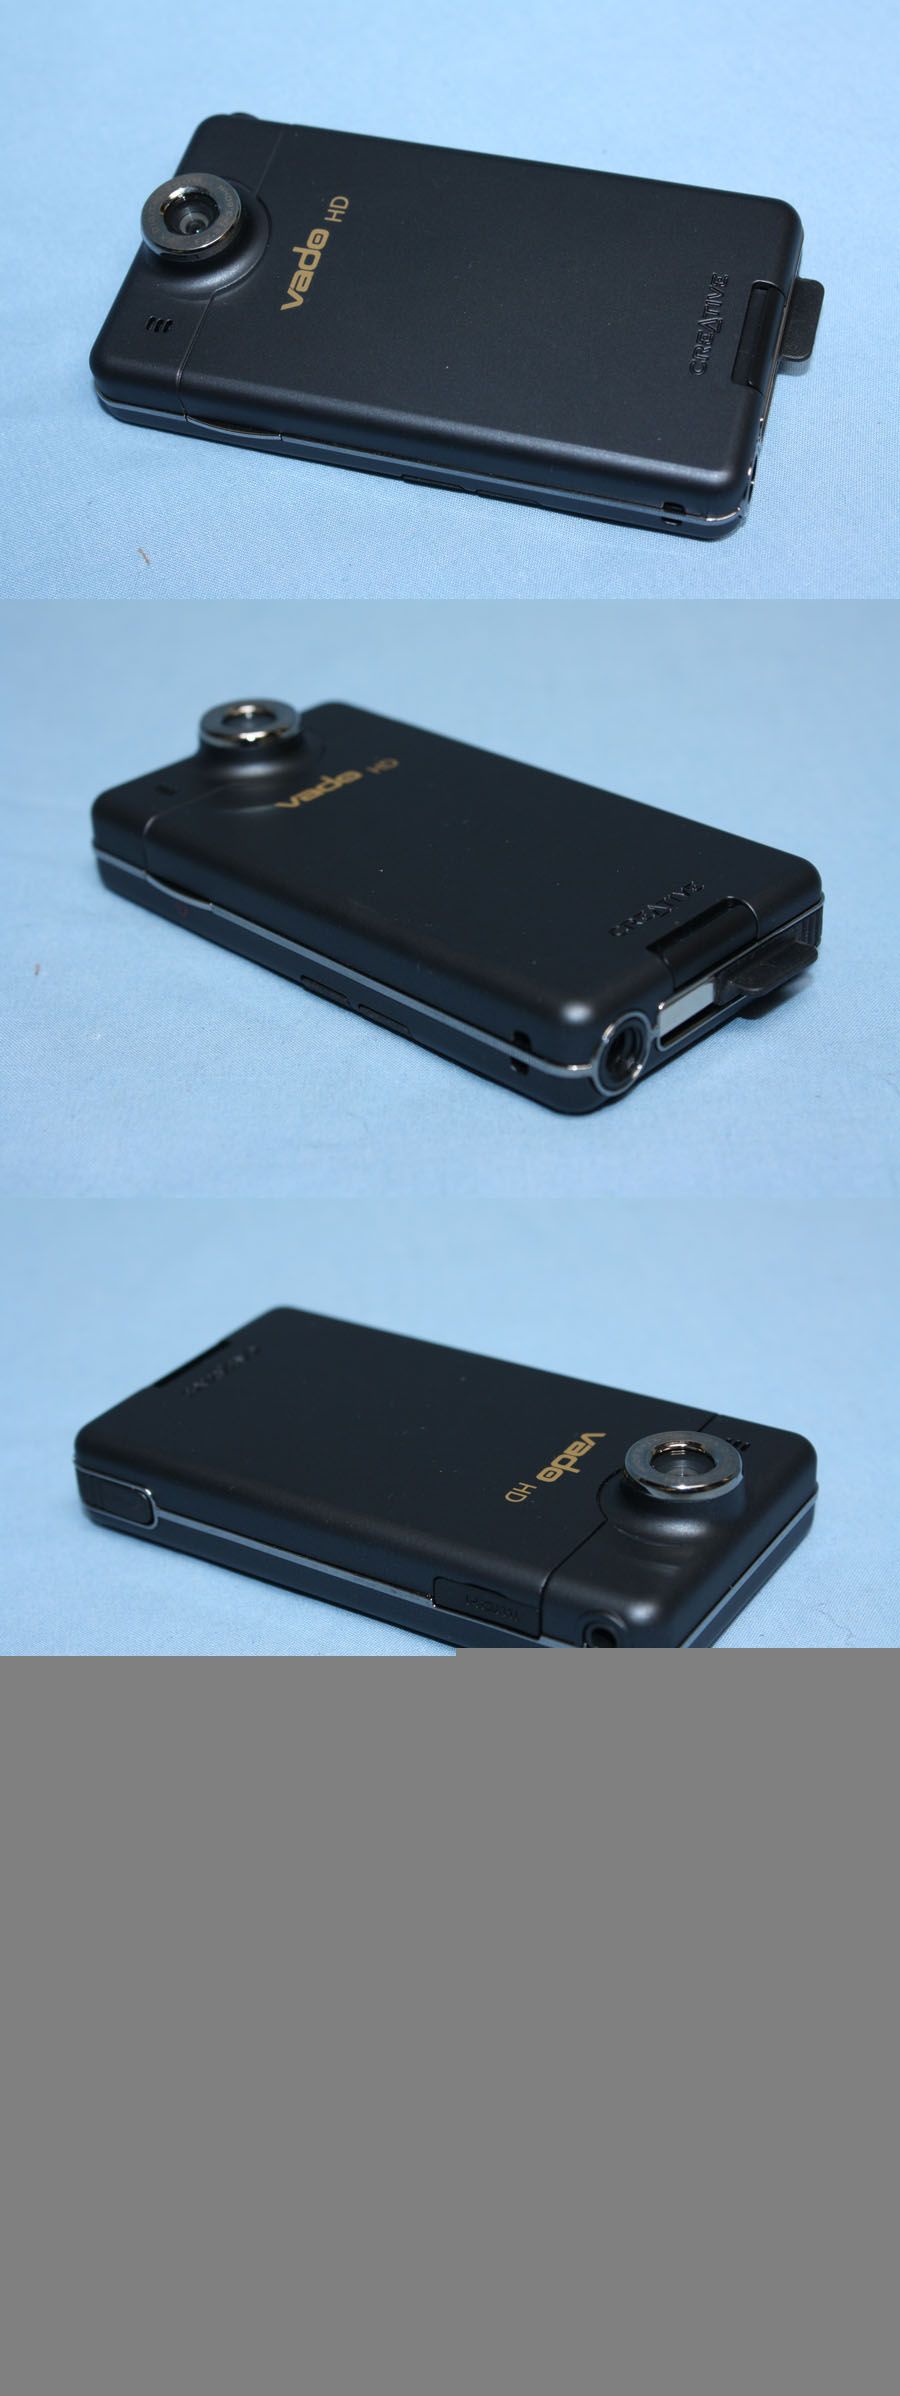 Creative Labs Vado HD 2nd Gen VF0584 Black 4GB Pocket Camcorder